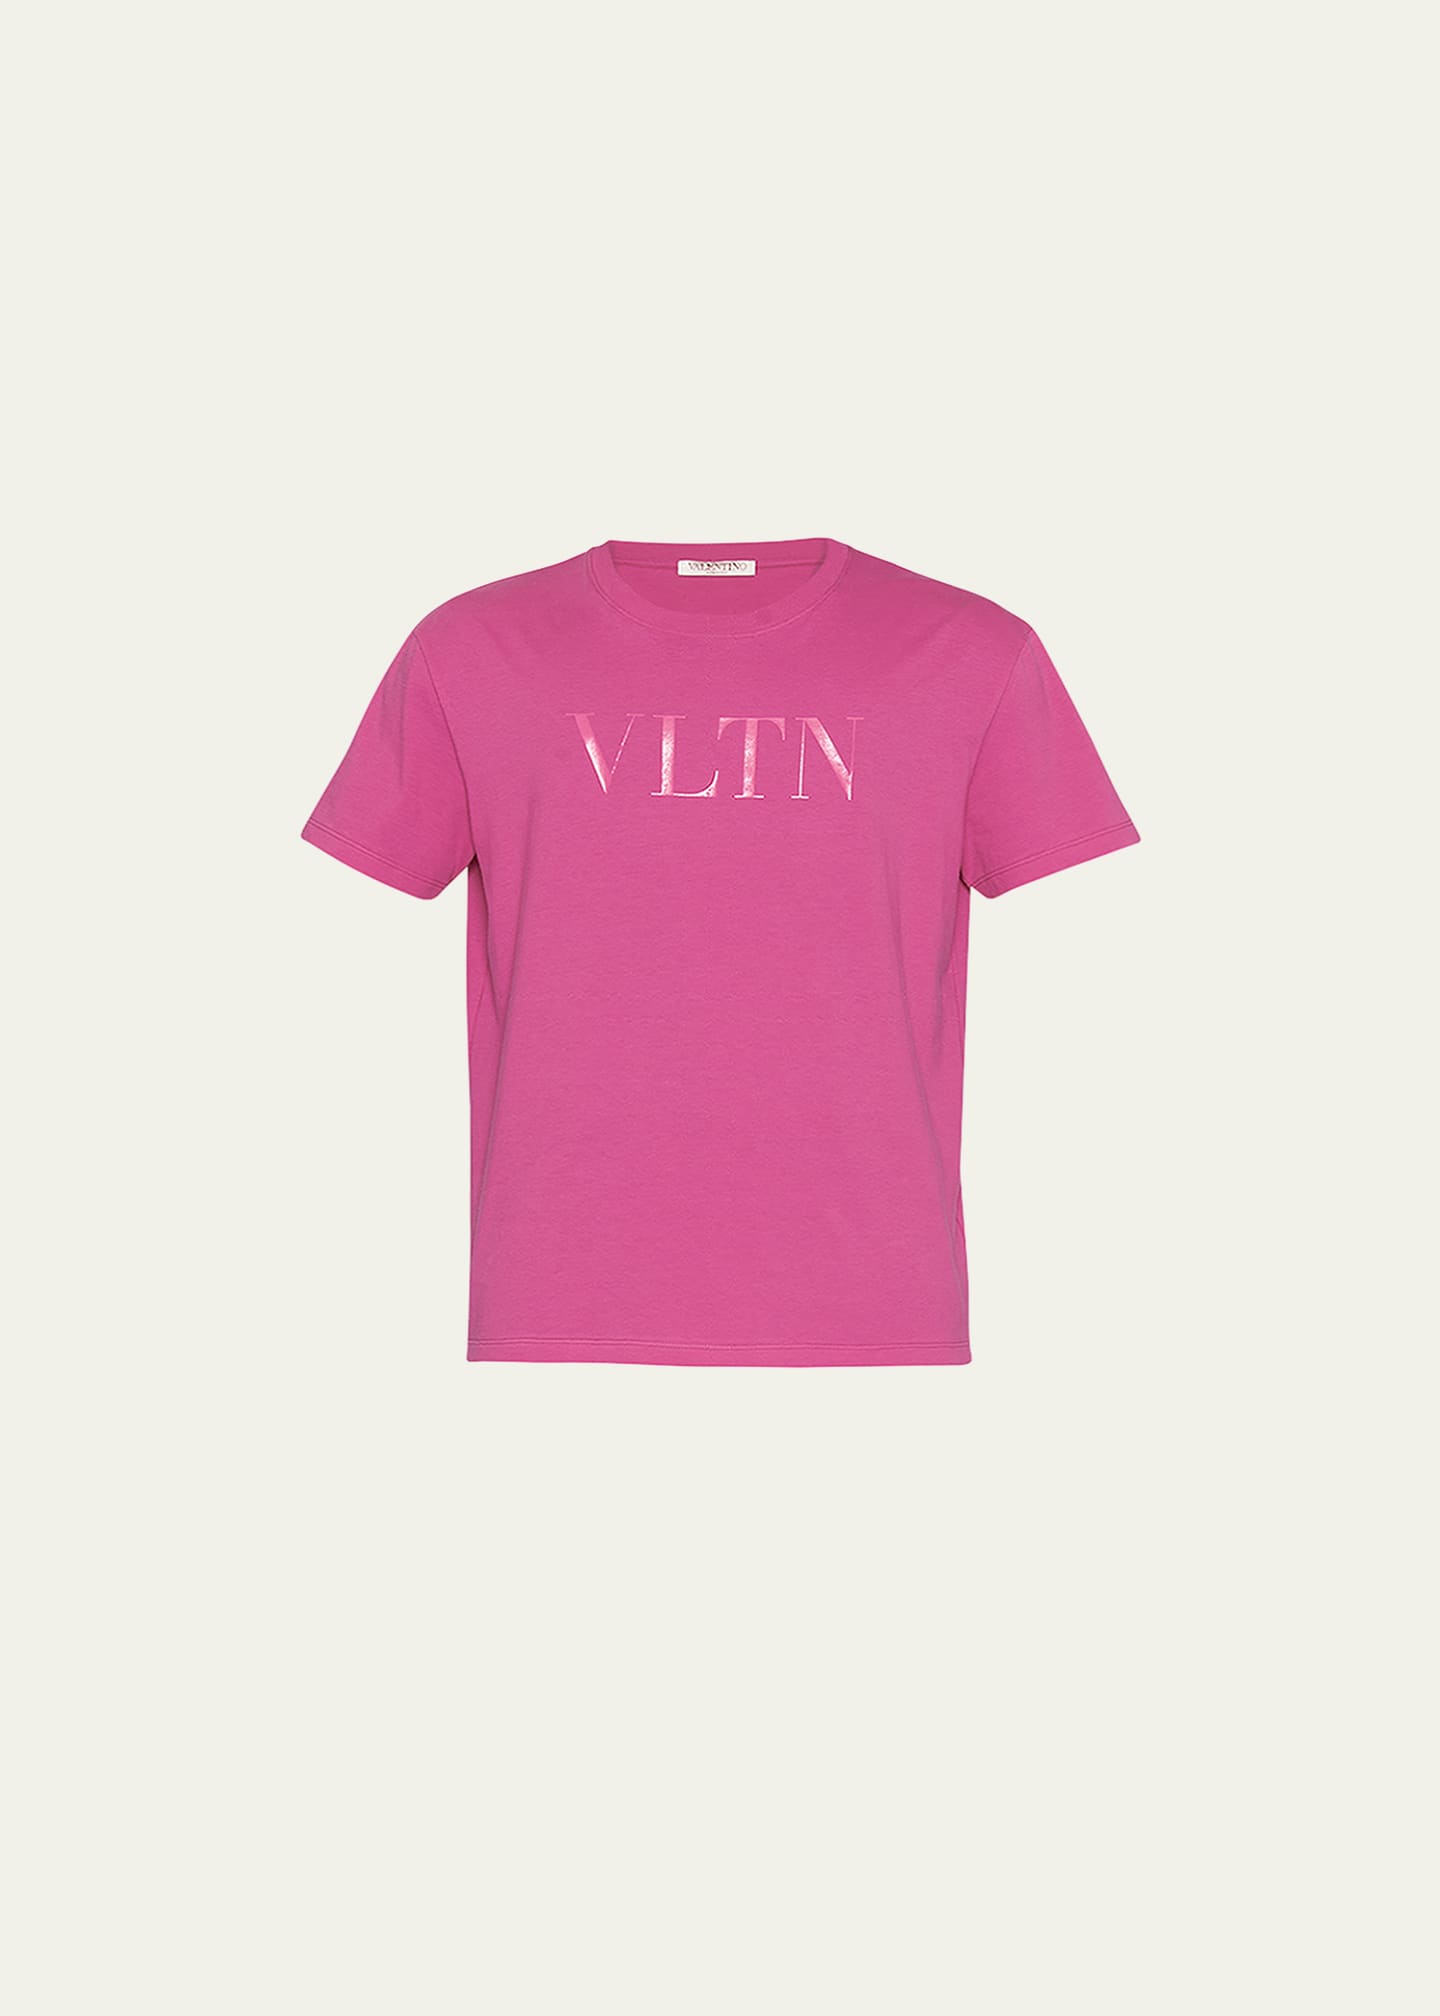 sammensatte medaljevinder prøve Valentino Garavani Men's Tonal VLTN Crew T-Shirt - Bergdorf Goodman